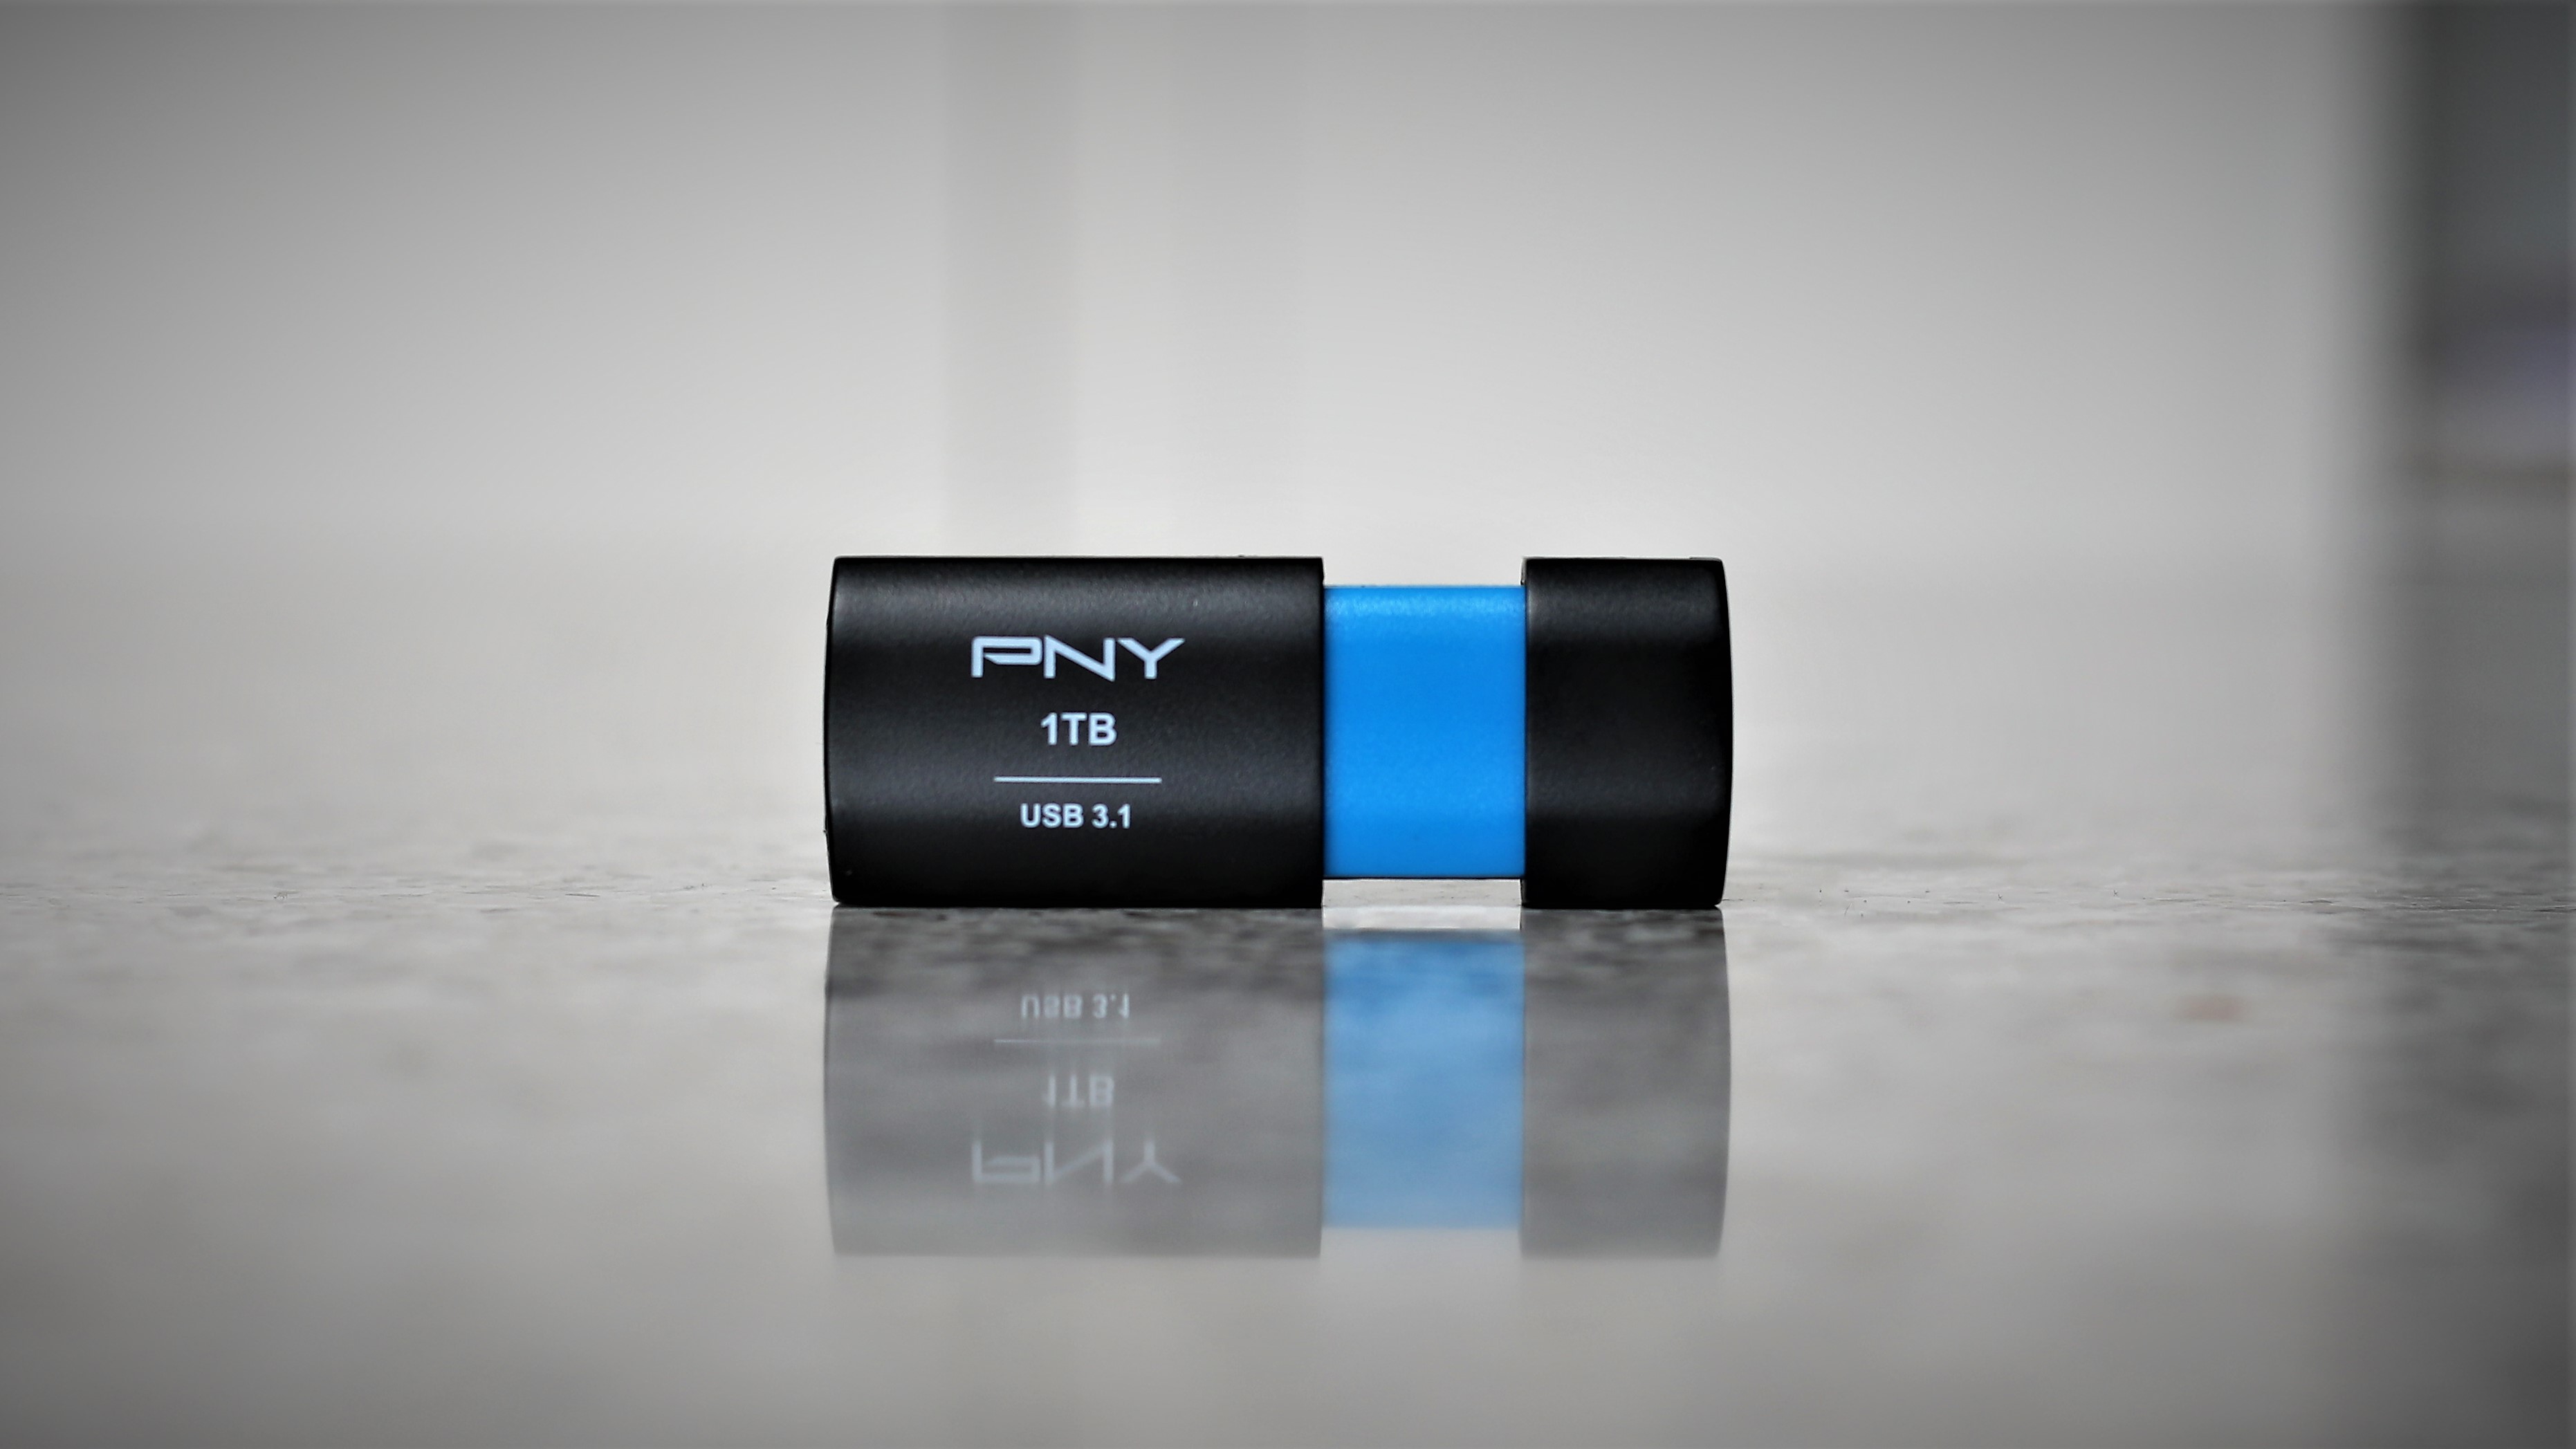 PNY 128GB Elite-X Fit USB 3.1 Flash Drive - 200MB/s, Silver